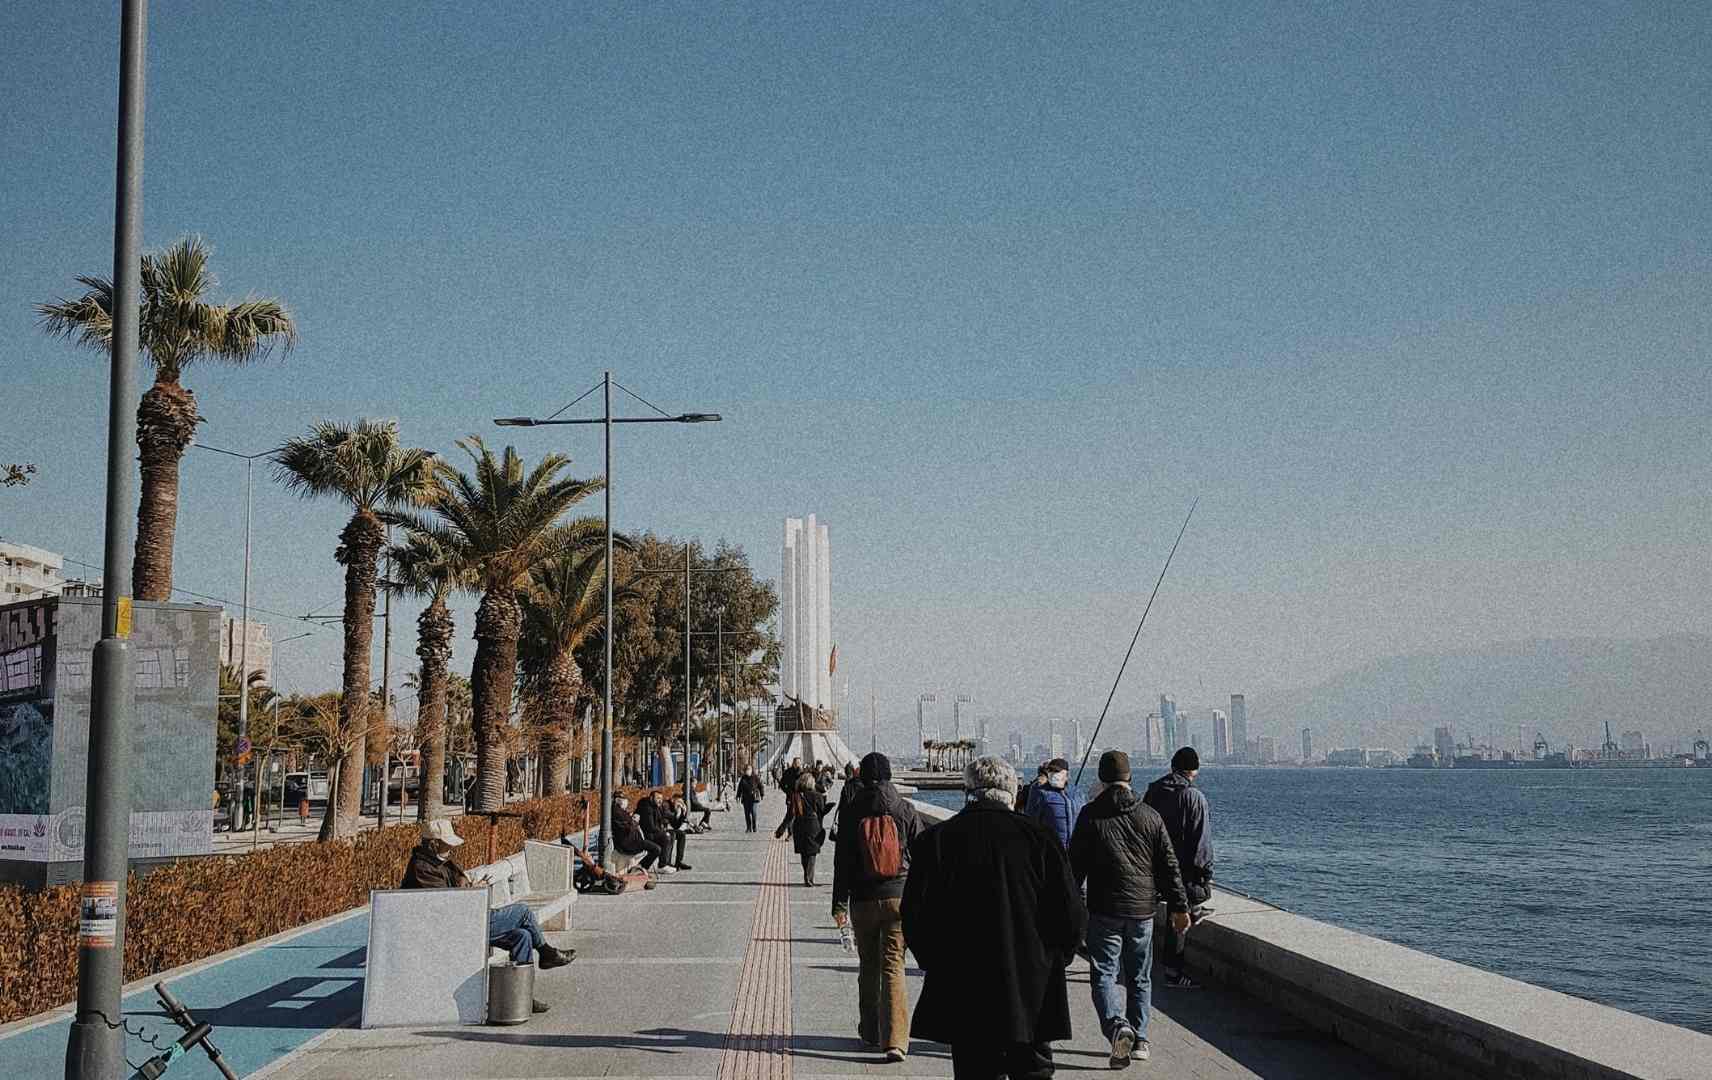 Promenade in Izmir